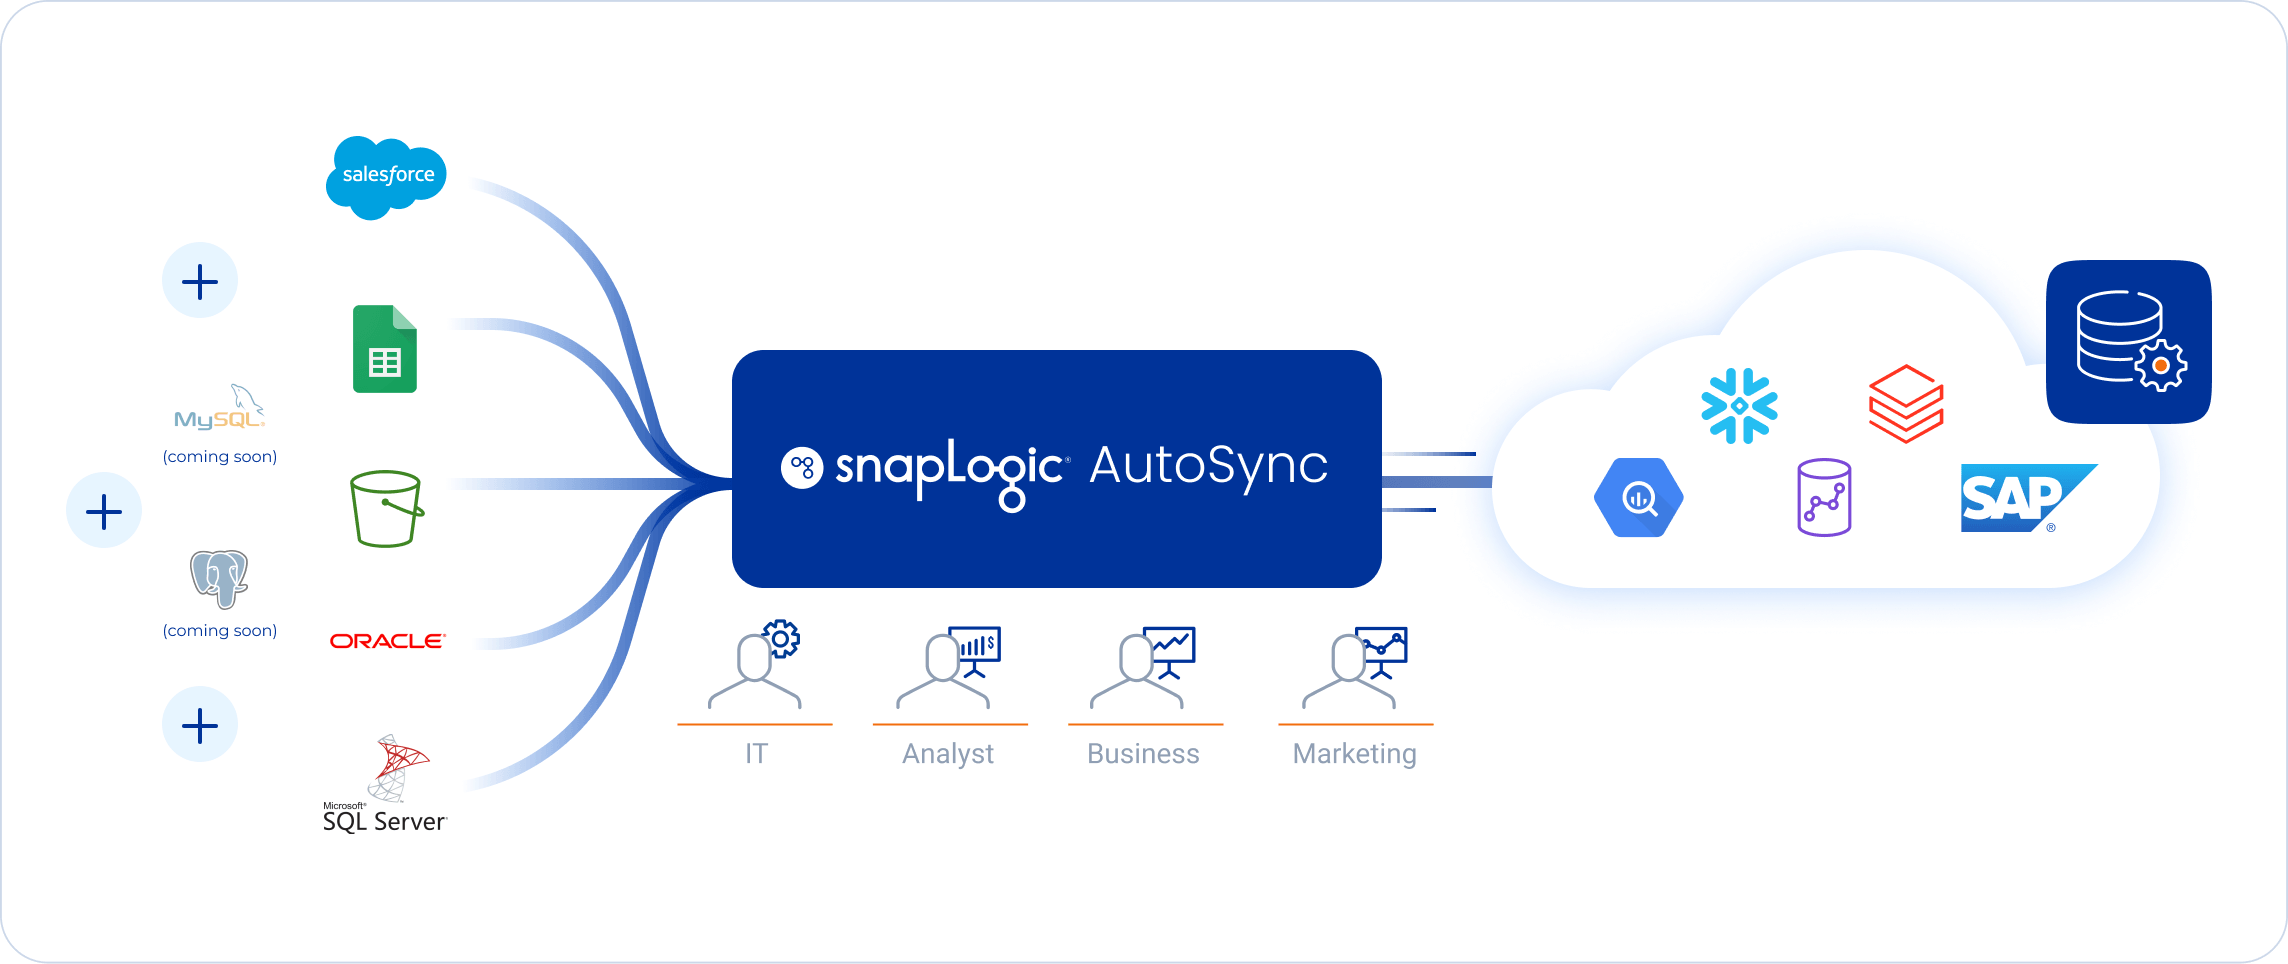 snaplogic autosync infographic